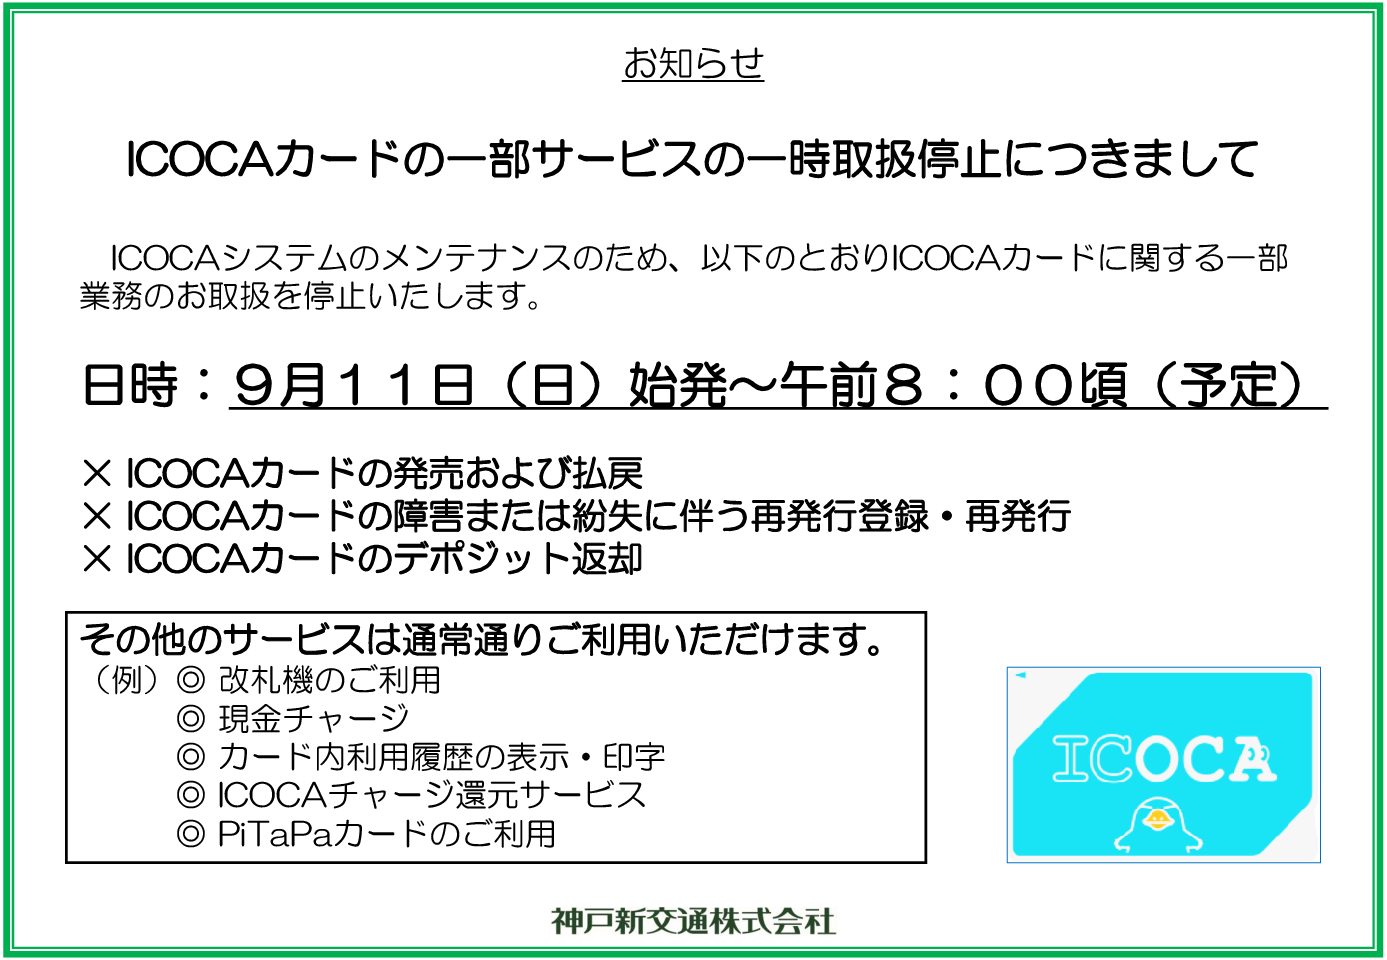 【大阪メトロ】システム更新に伴いICOCA一部業務の休止を発表